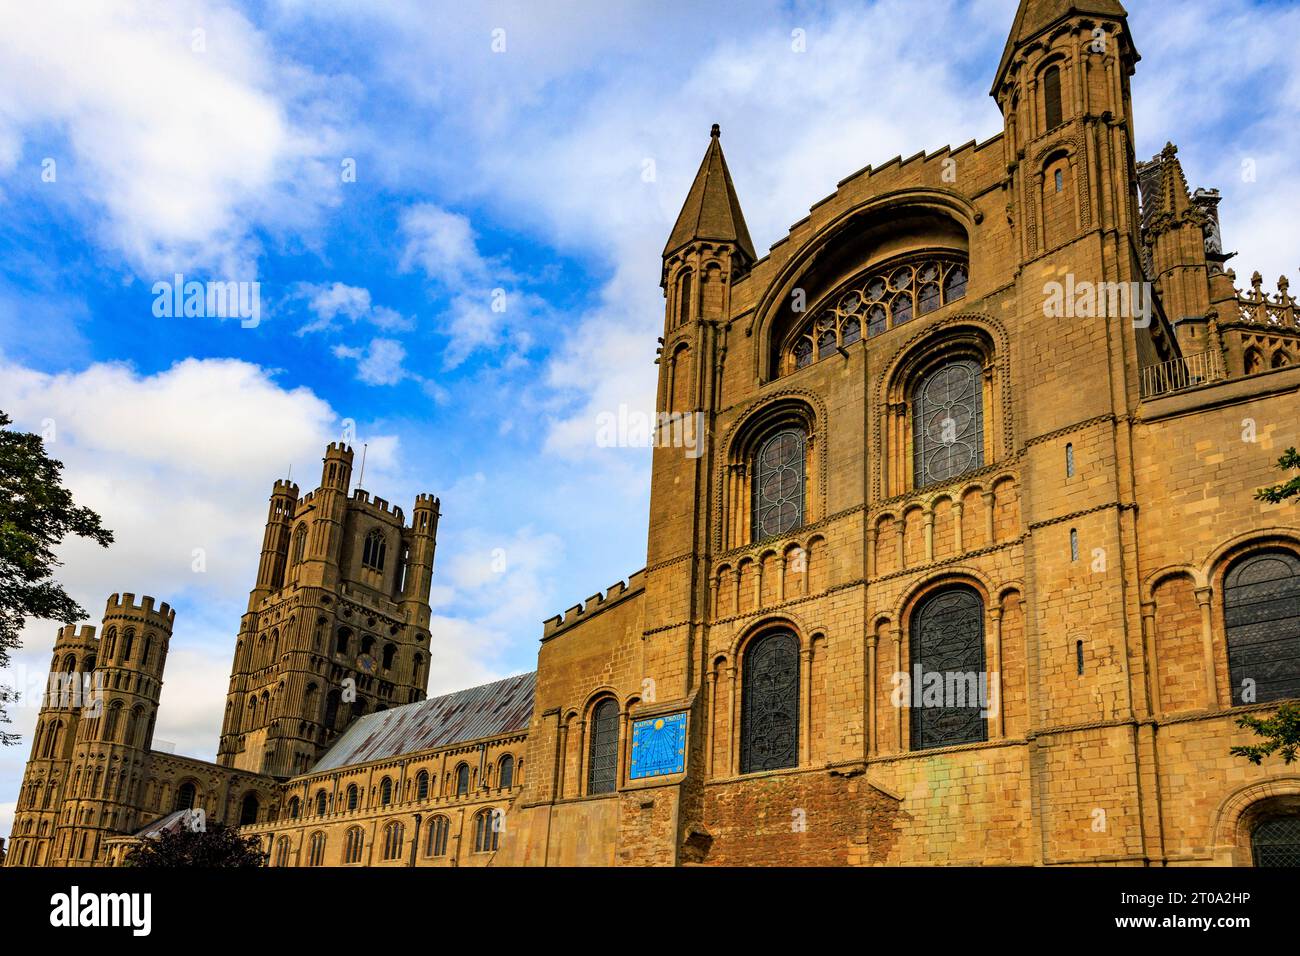 Die Sonnenuhr auf der Südseite der Ely Cathedral, Cambridgeshire, England. Die griechische Inschrift „Kairon Gnothi“ bedeutet „Wählen Sie den richtigen Moment“. Stockfoto